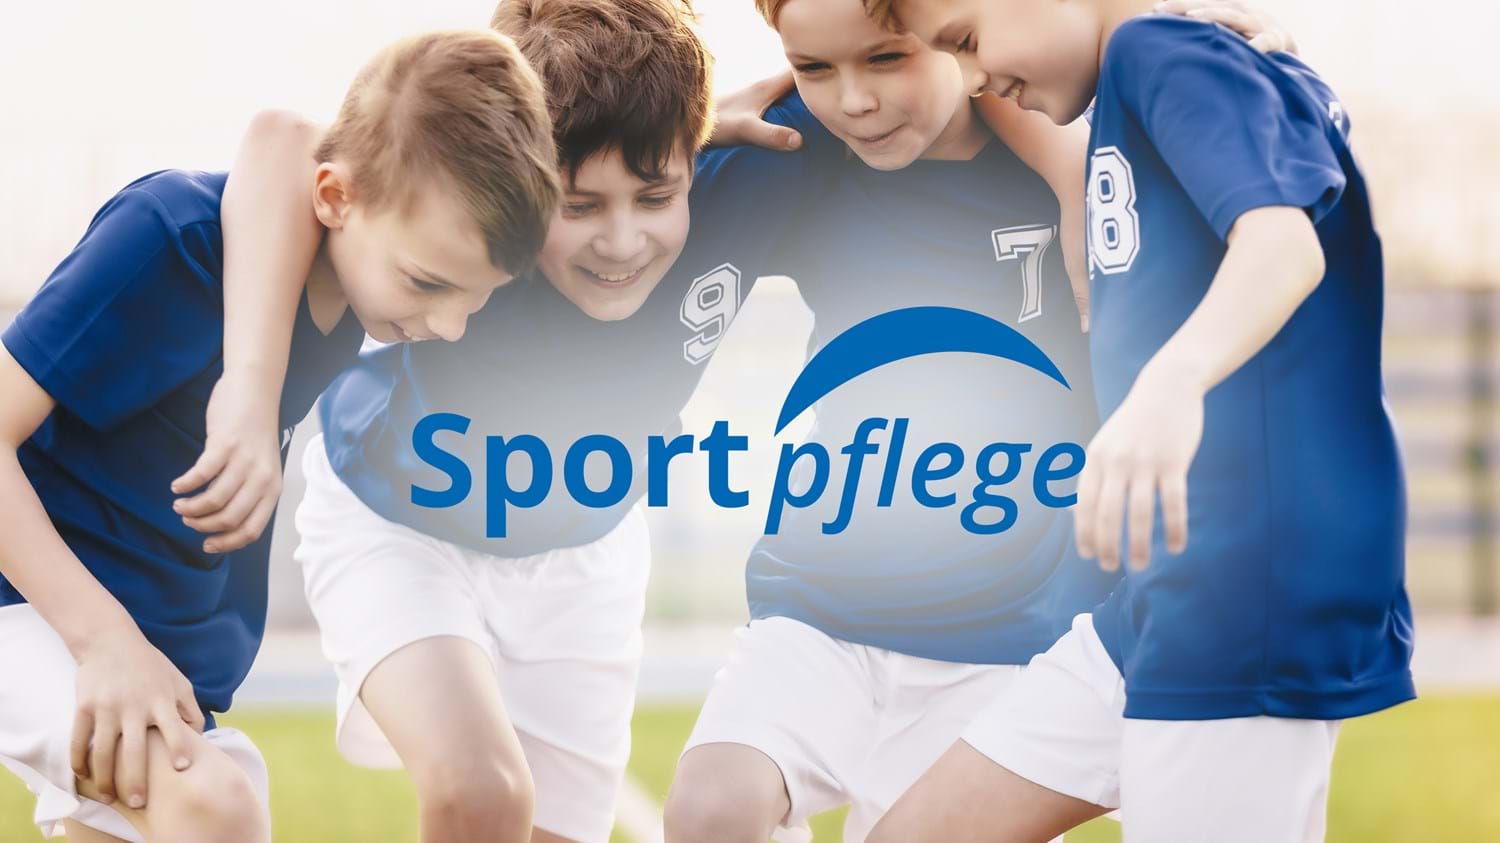 Web_Sportpflege.jpg